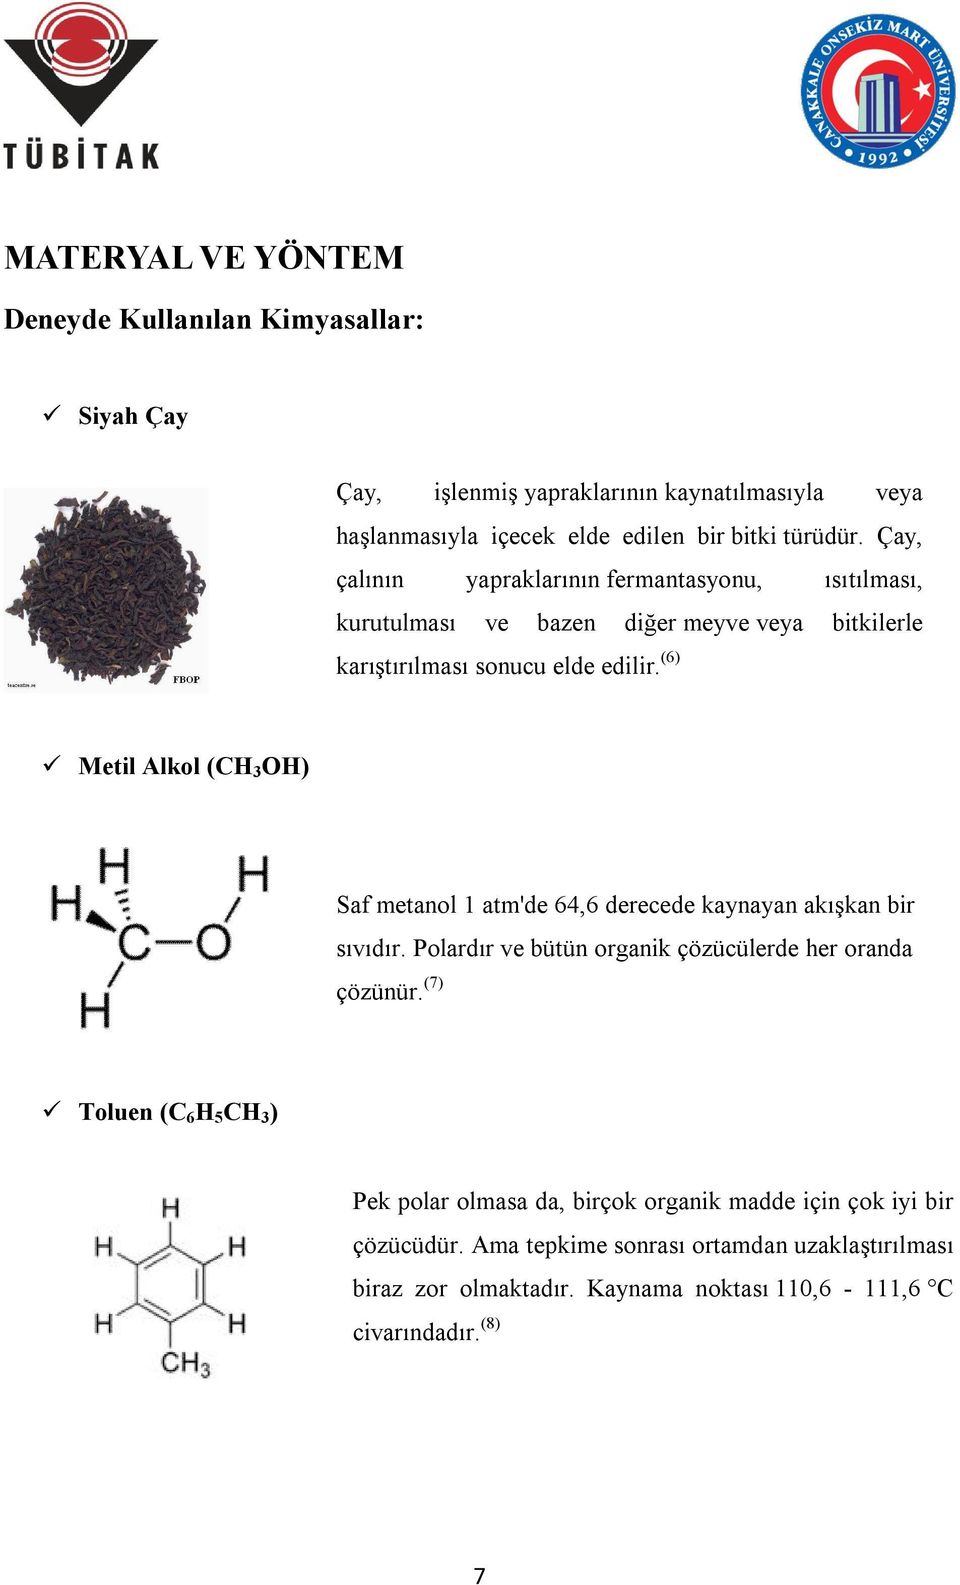 (6) Metil Alkol (CH 3 OH) Saf metanol 1 atm'de 64,6 derecede kaynayan akışkan bir sıvıdır. Polardır ve bütün organik çözücülerde her oranda çözünür.